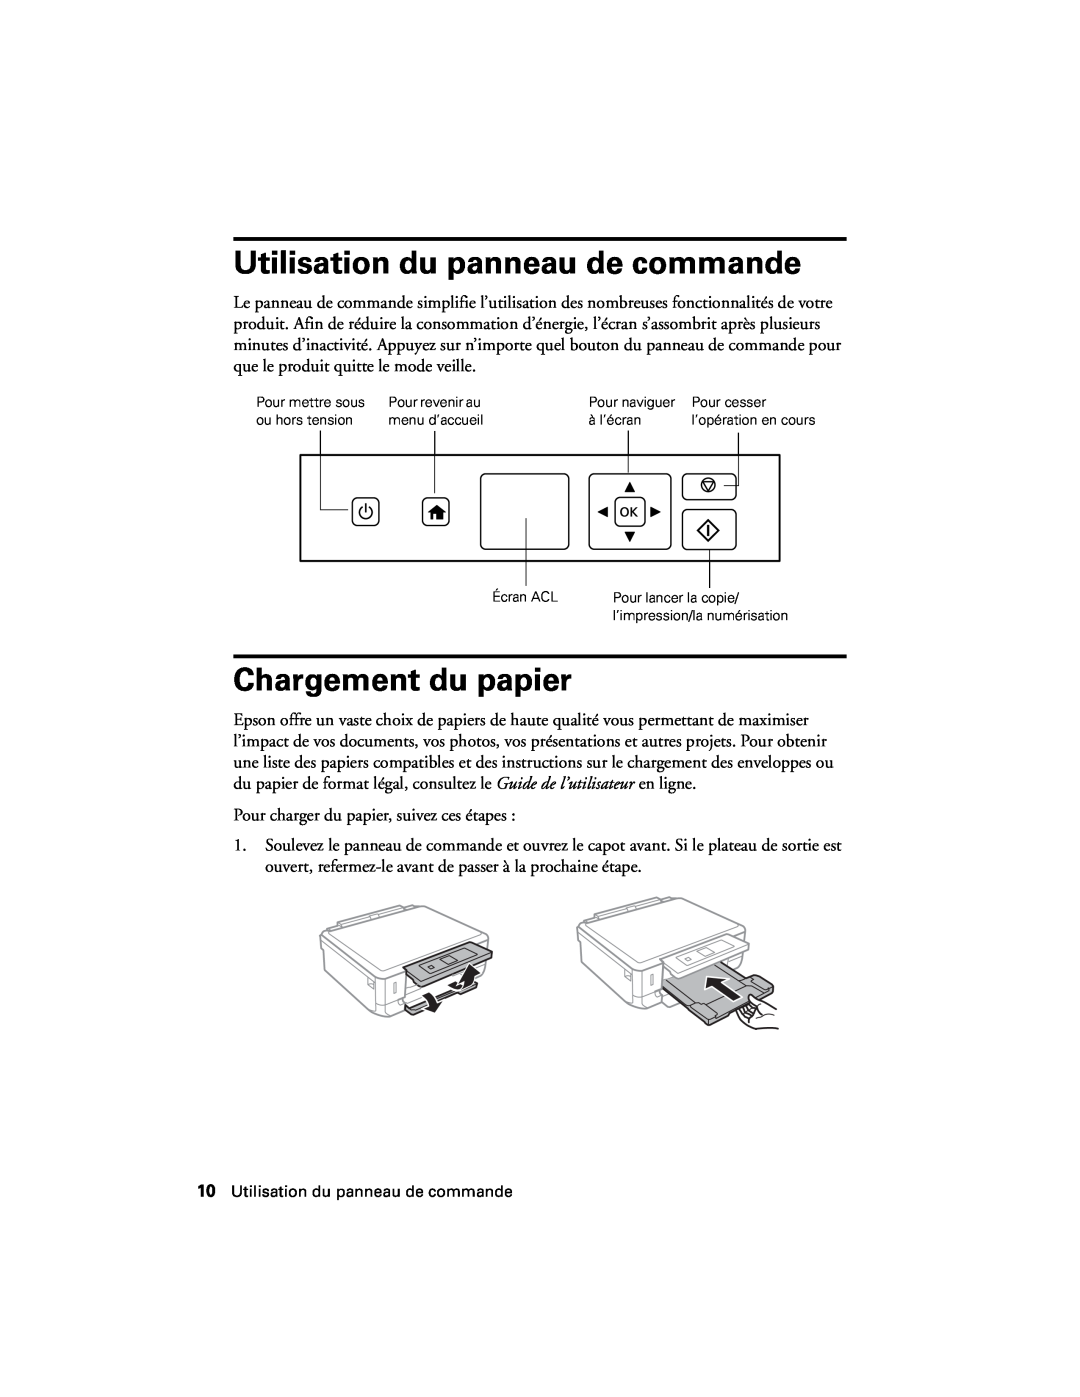 Epson XP-520 manual Utilisation du panneau de commande, Chargement du papier 